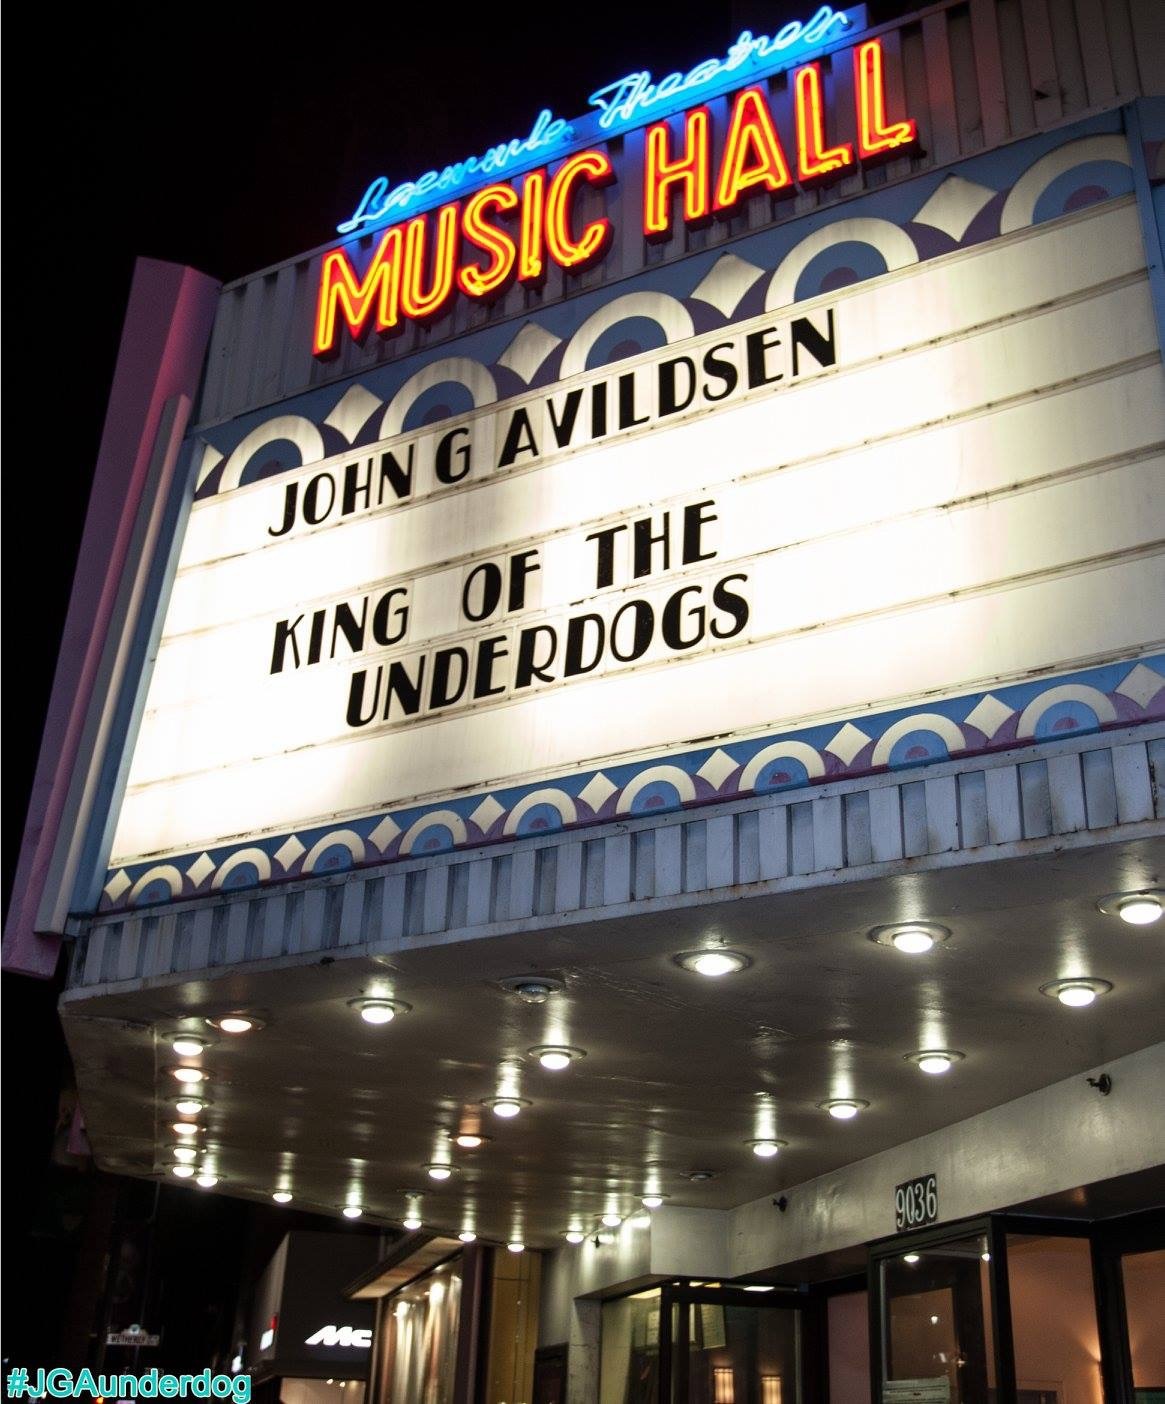 The premiere of John G. Avildsen: King of the Underdogs documentary